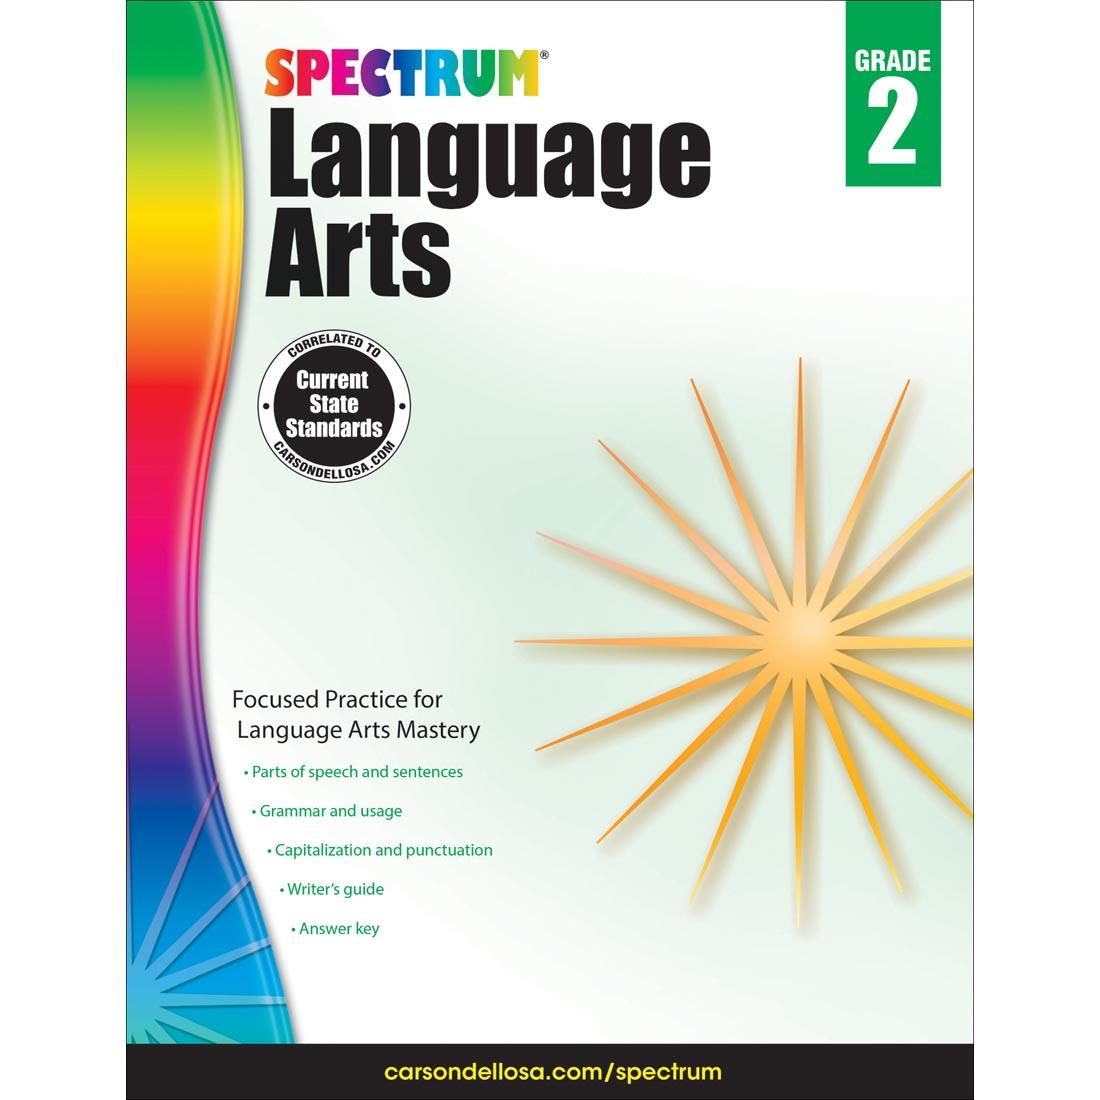 Spectrum Language Arts Book by Carson Dellosa Grade 2